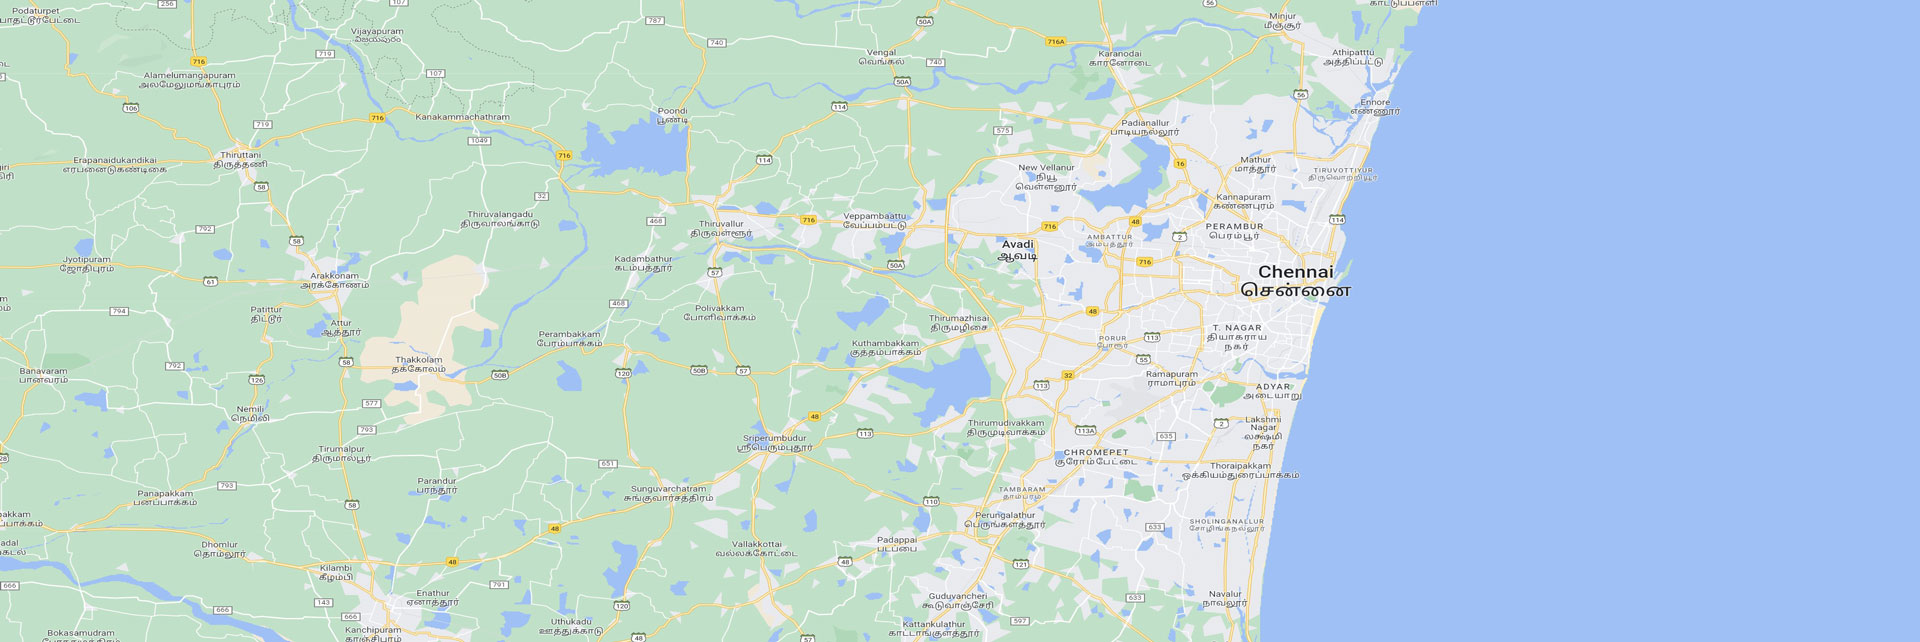 Chennai Tour Map